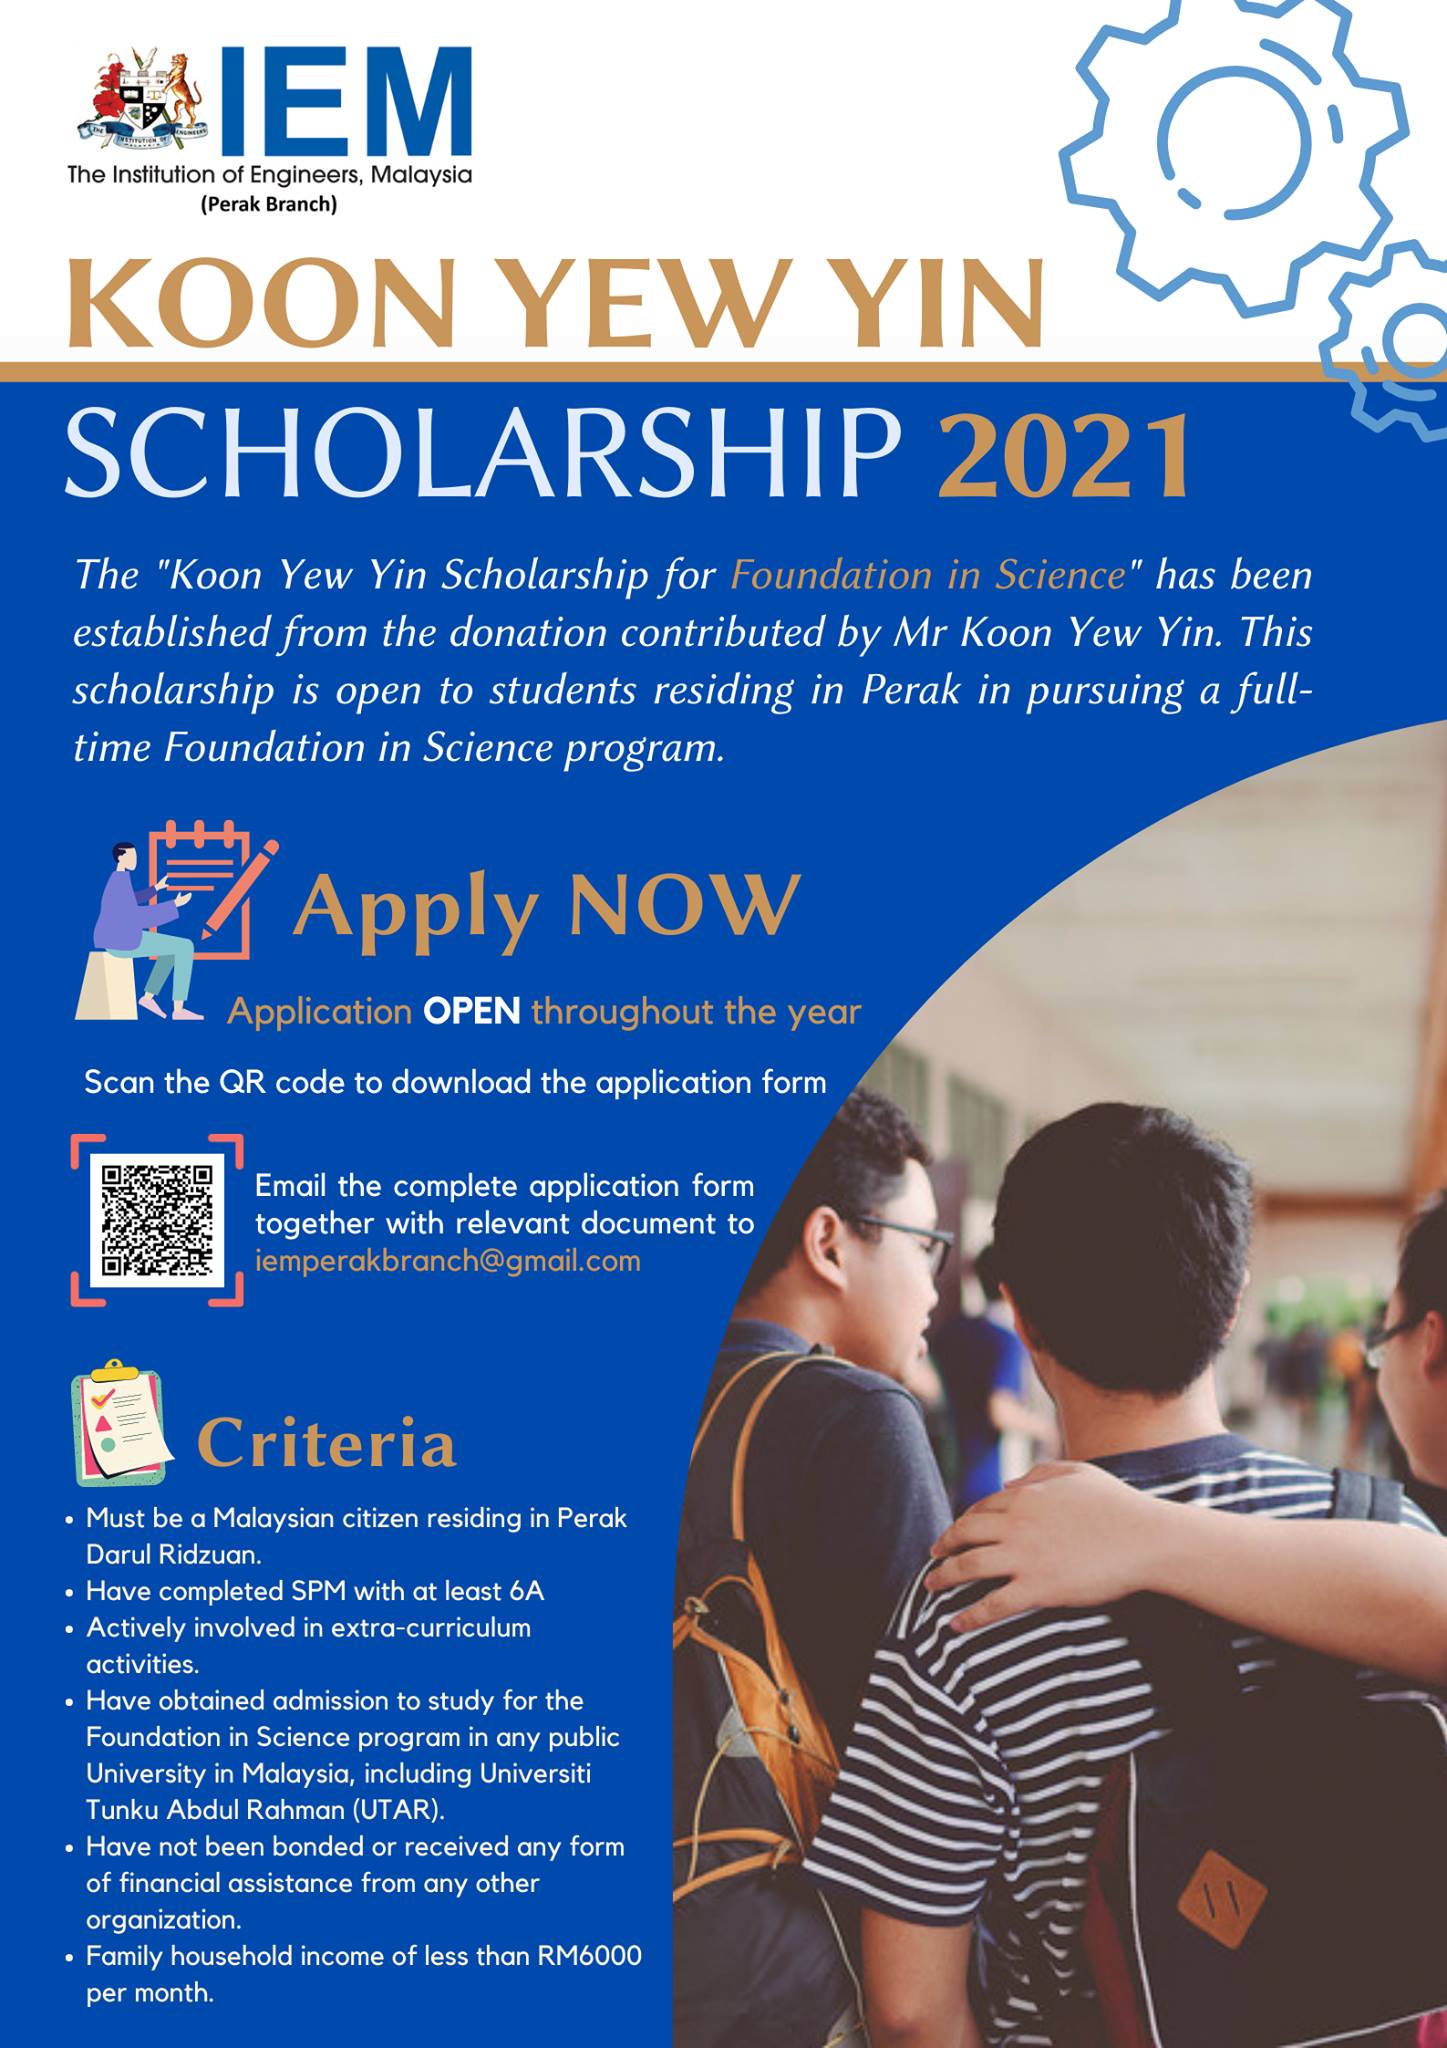 Gamuda scholarship 2021